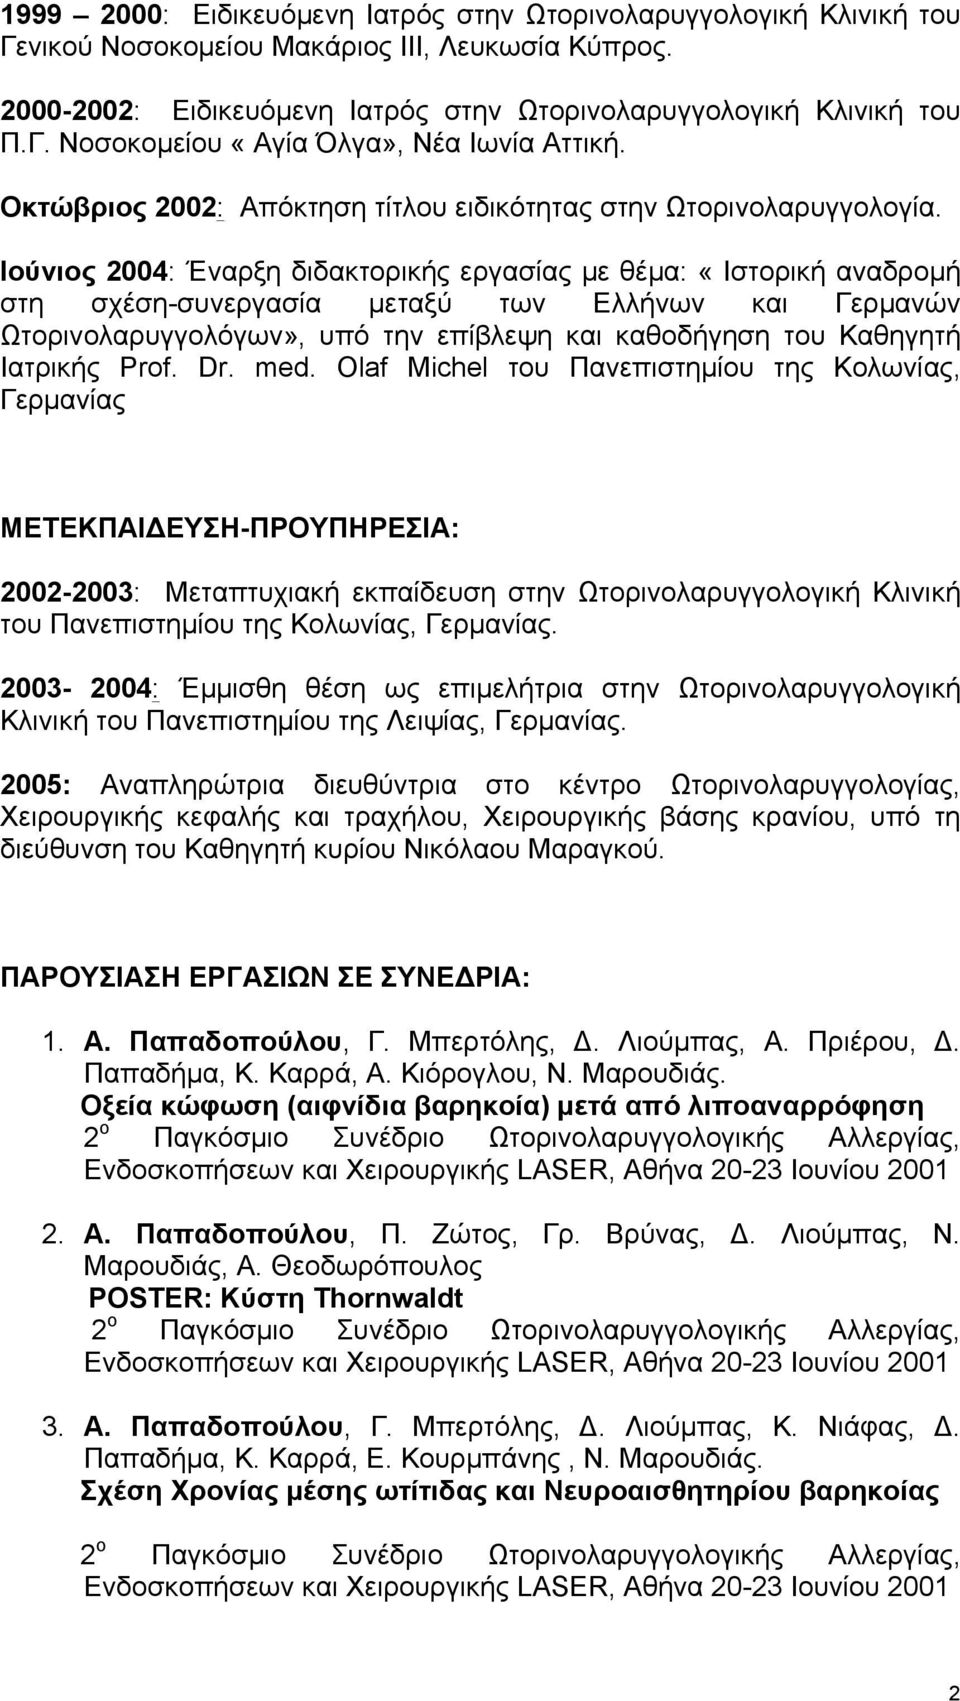 Ιούνιος 2004: Έναρξη διδακτορικής εργασίας µε θέµα: «Ιστορική αναδροµή στη σχέση-συνεργασία µεταξύ των Ελλήνων και Γερµανών Ωτορινολαρυγγολόγων», υπό την επίβλεψη και καθοδήγηση του Καθηγητή Ιατρικής